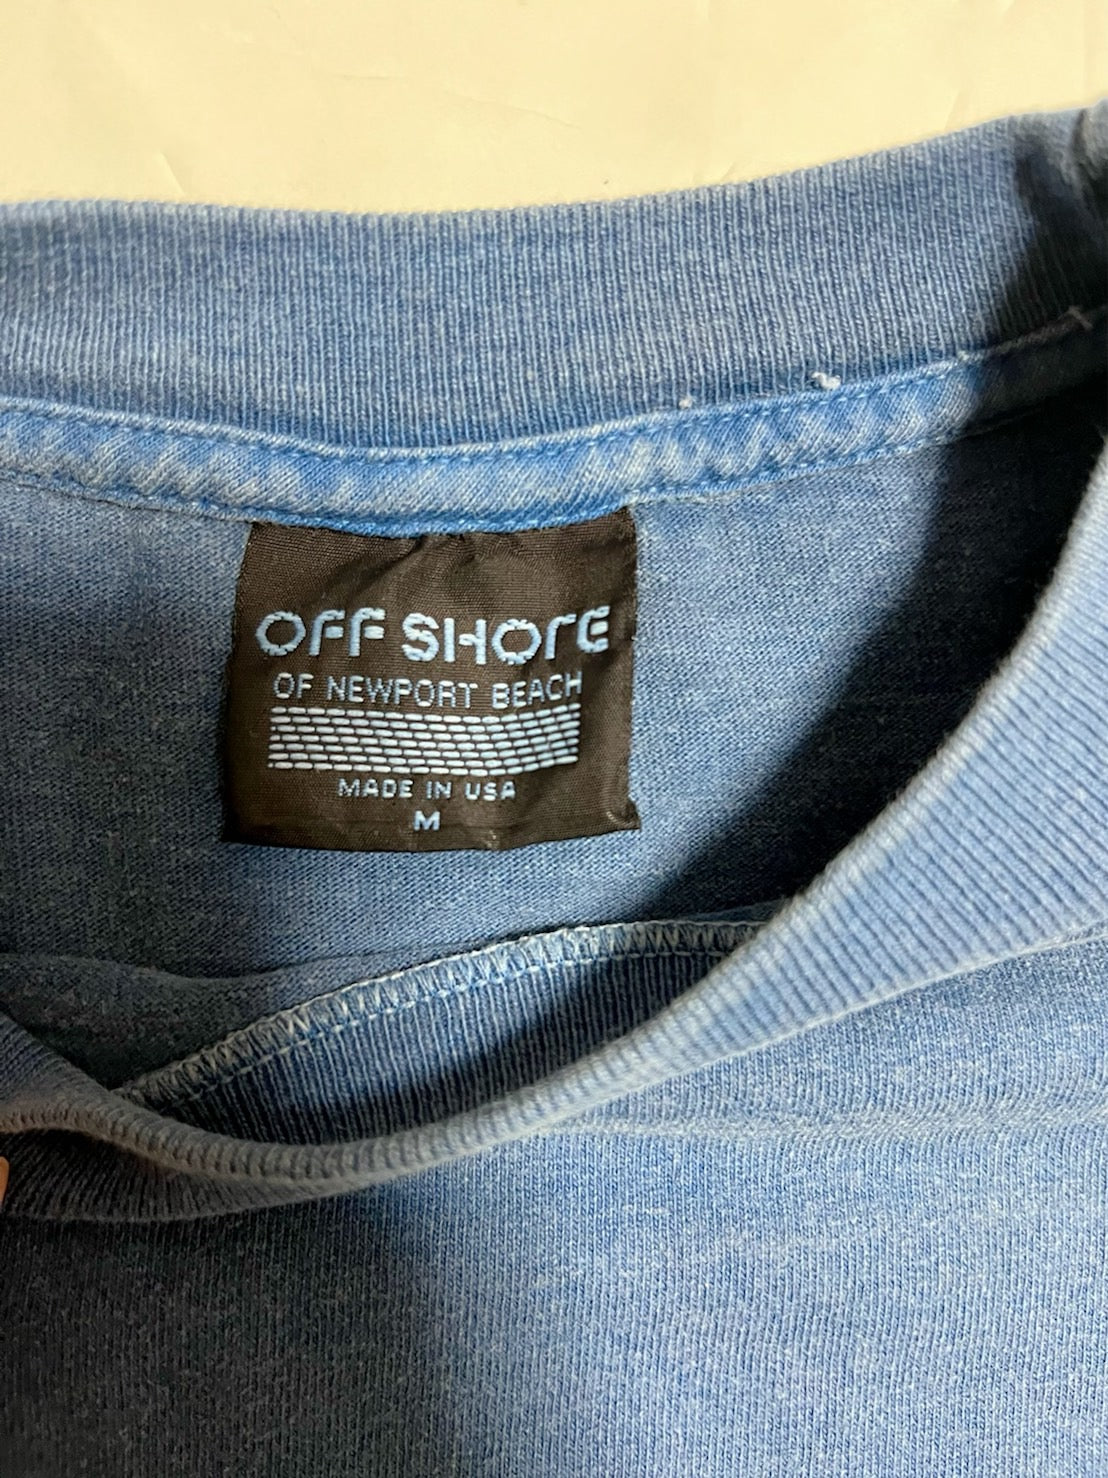 【offshore】vintage surf 90's offshore T-shirt (men's M)